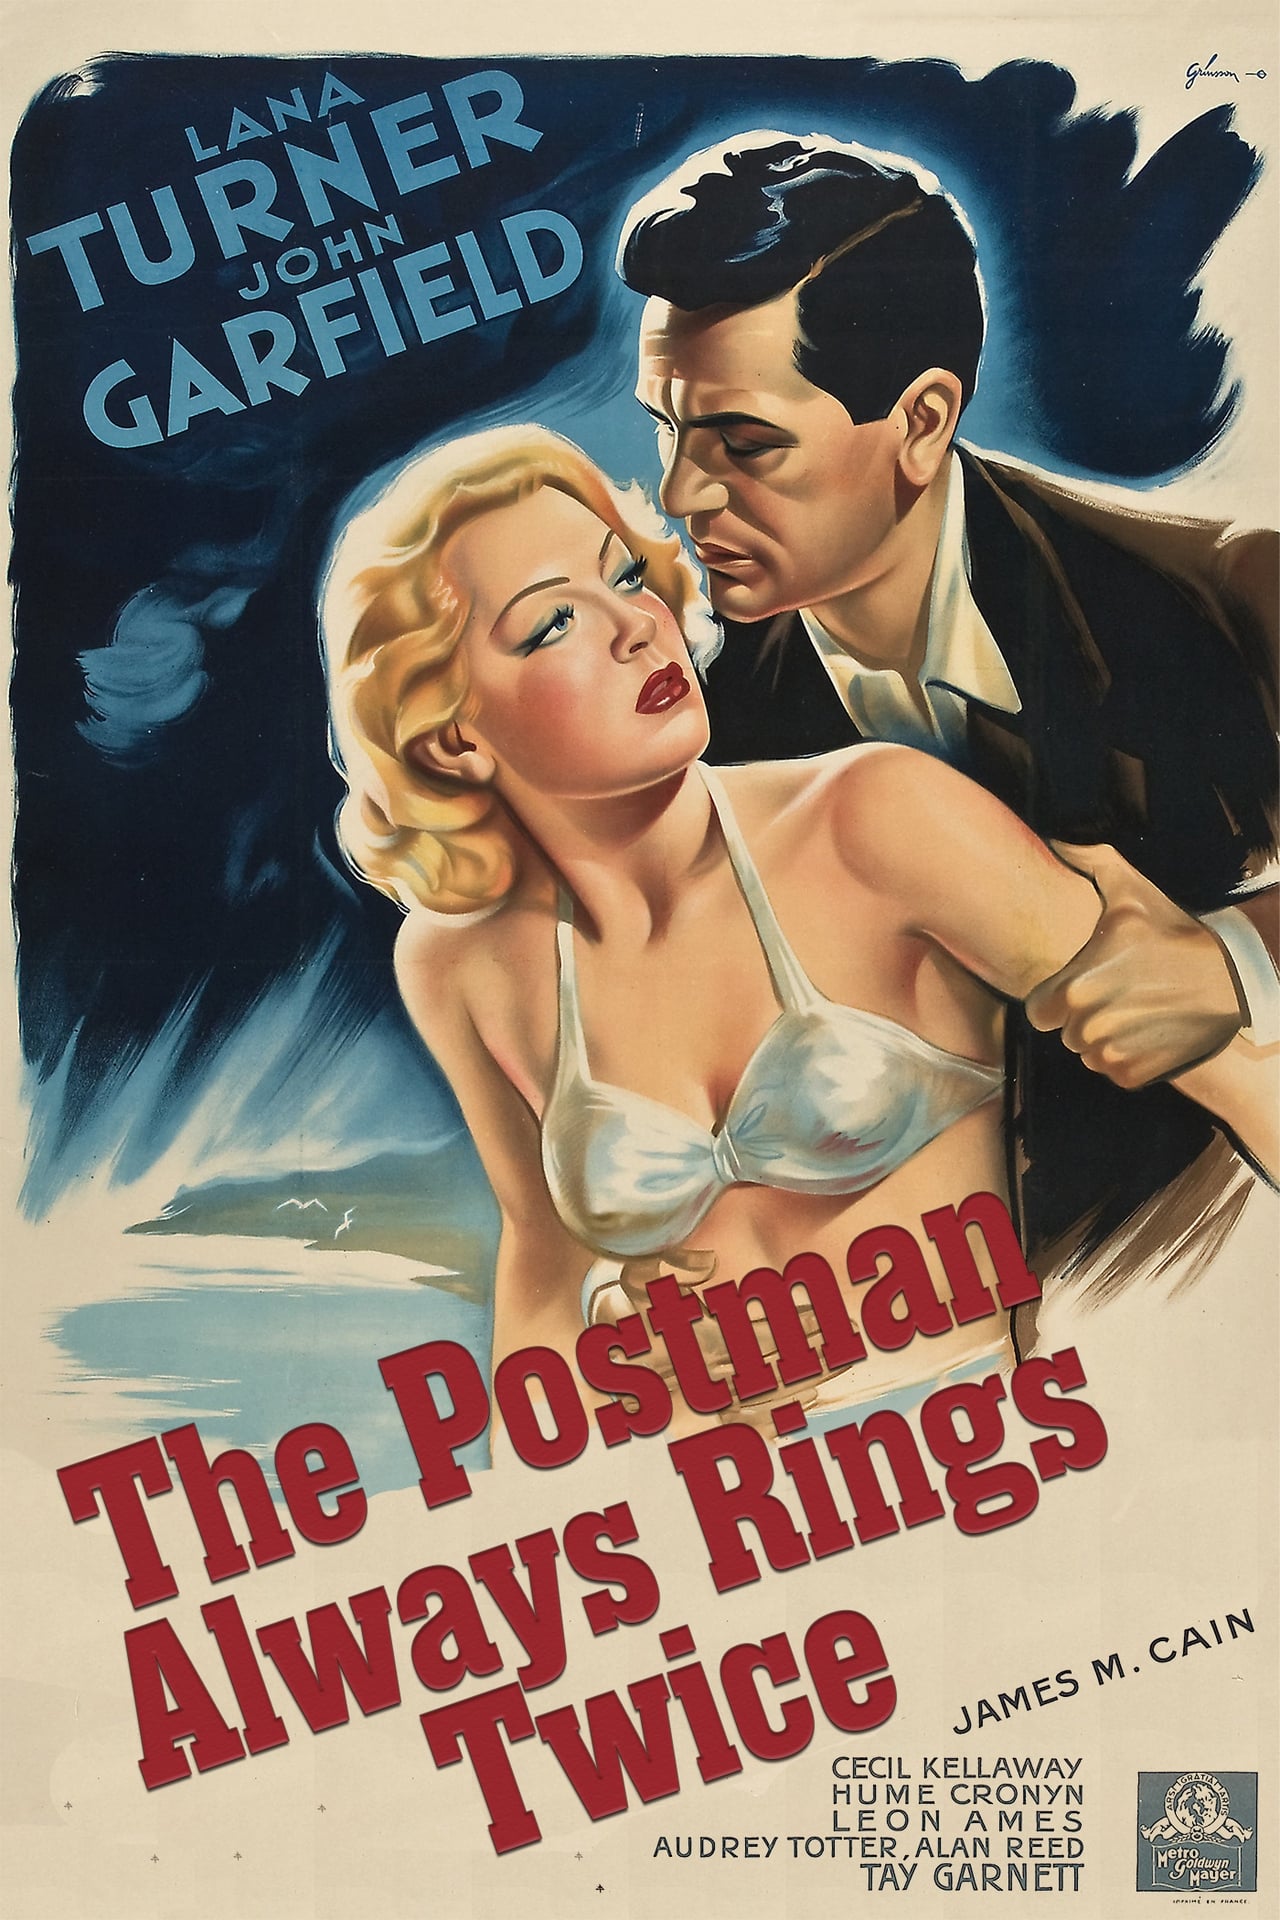 EN - The Postman Always Rings Twice (1946)  JOHN GARFIELD